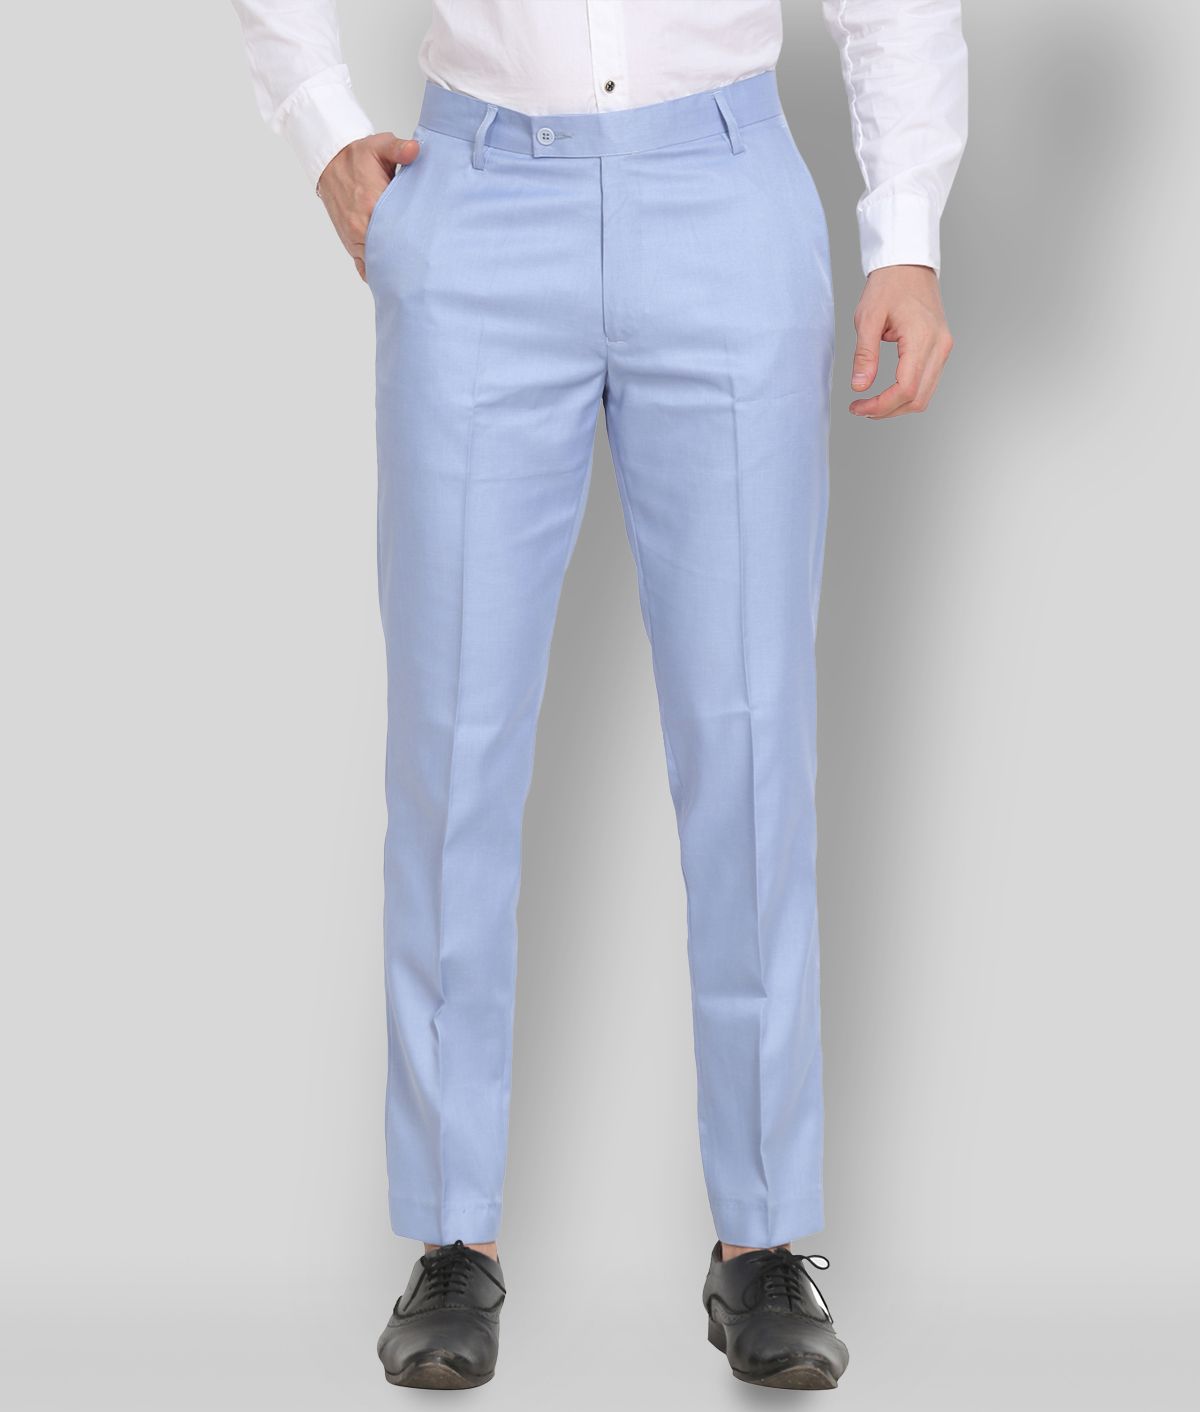     			SAM & JACK - Light Blue Polycotton Regular - Fit Men's Formal Pants ( Pack of 1 )